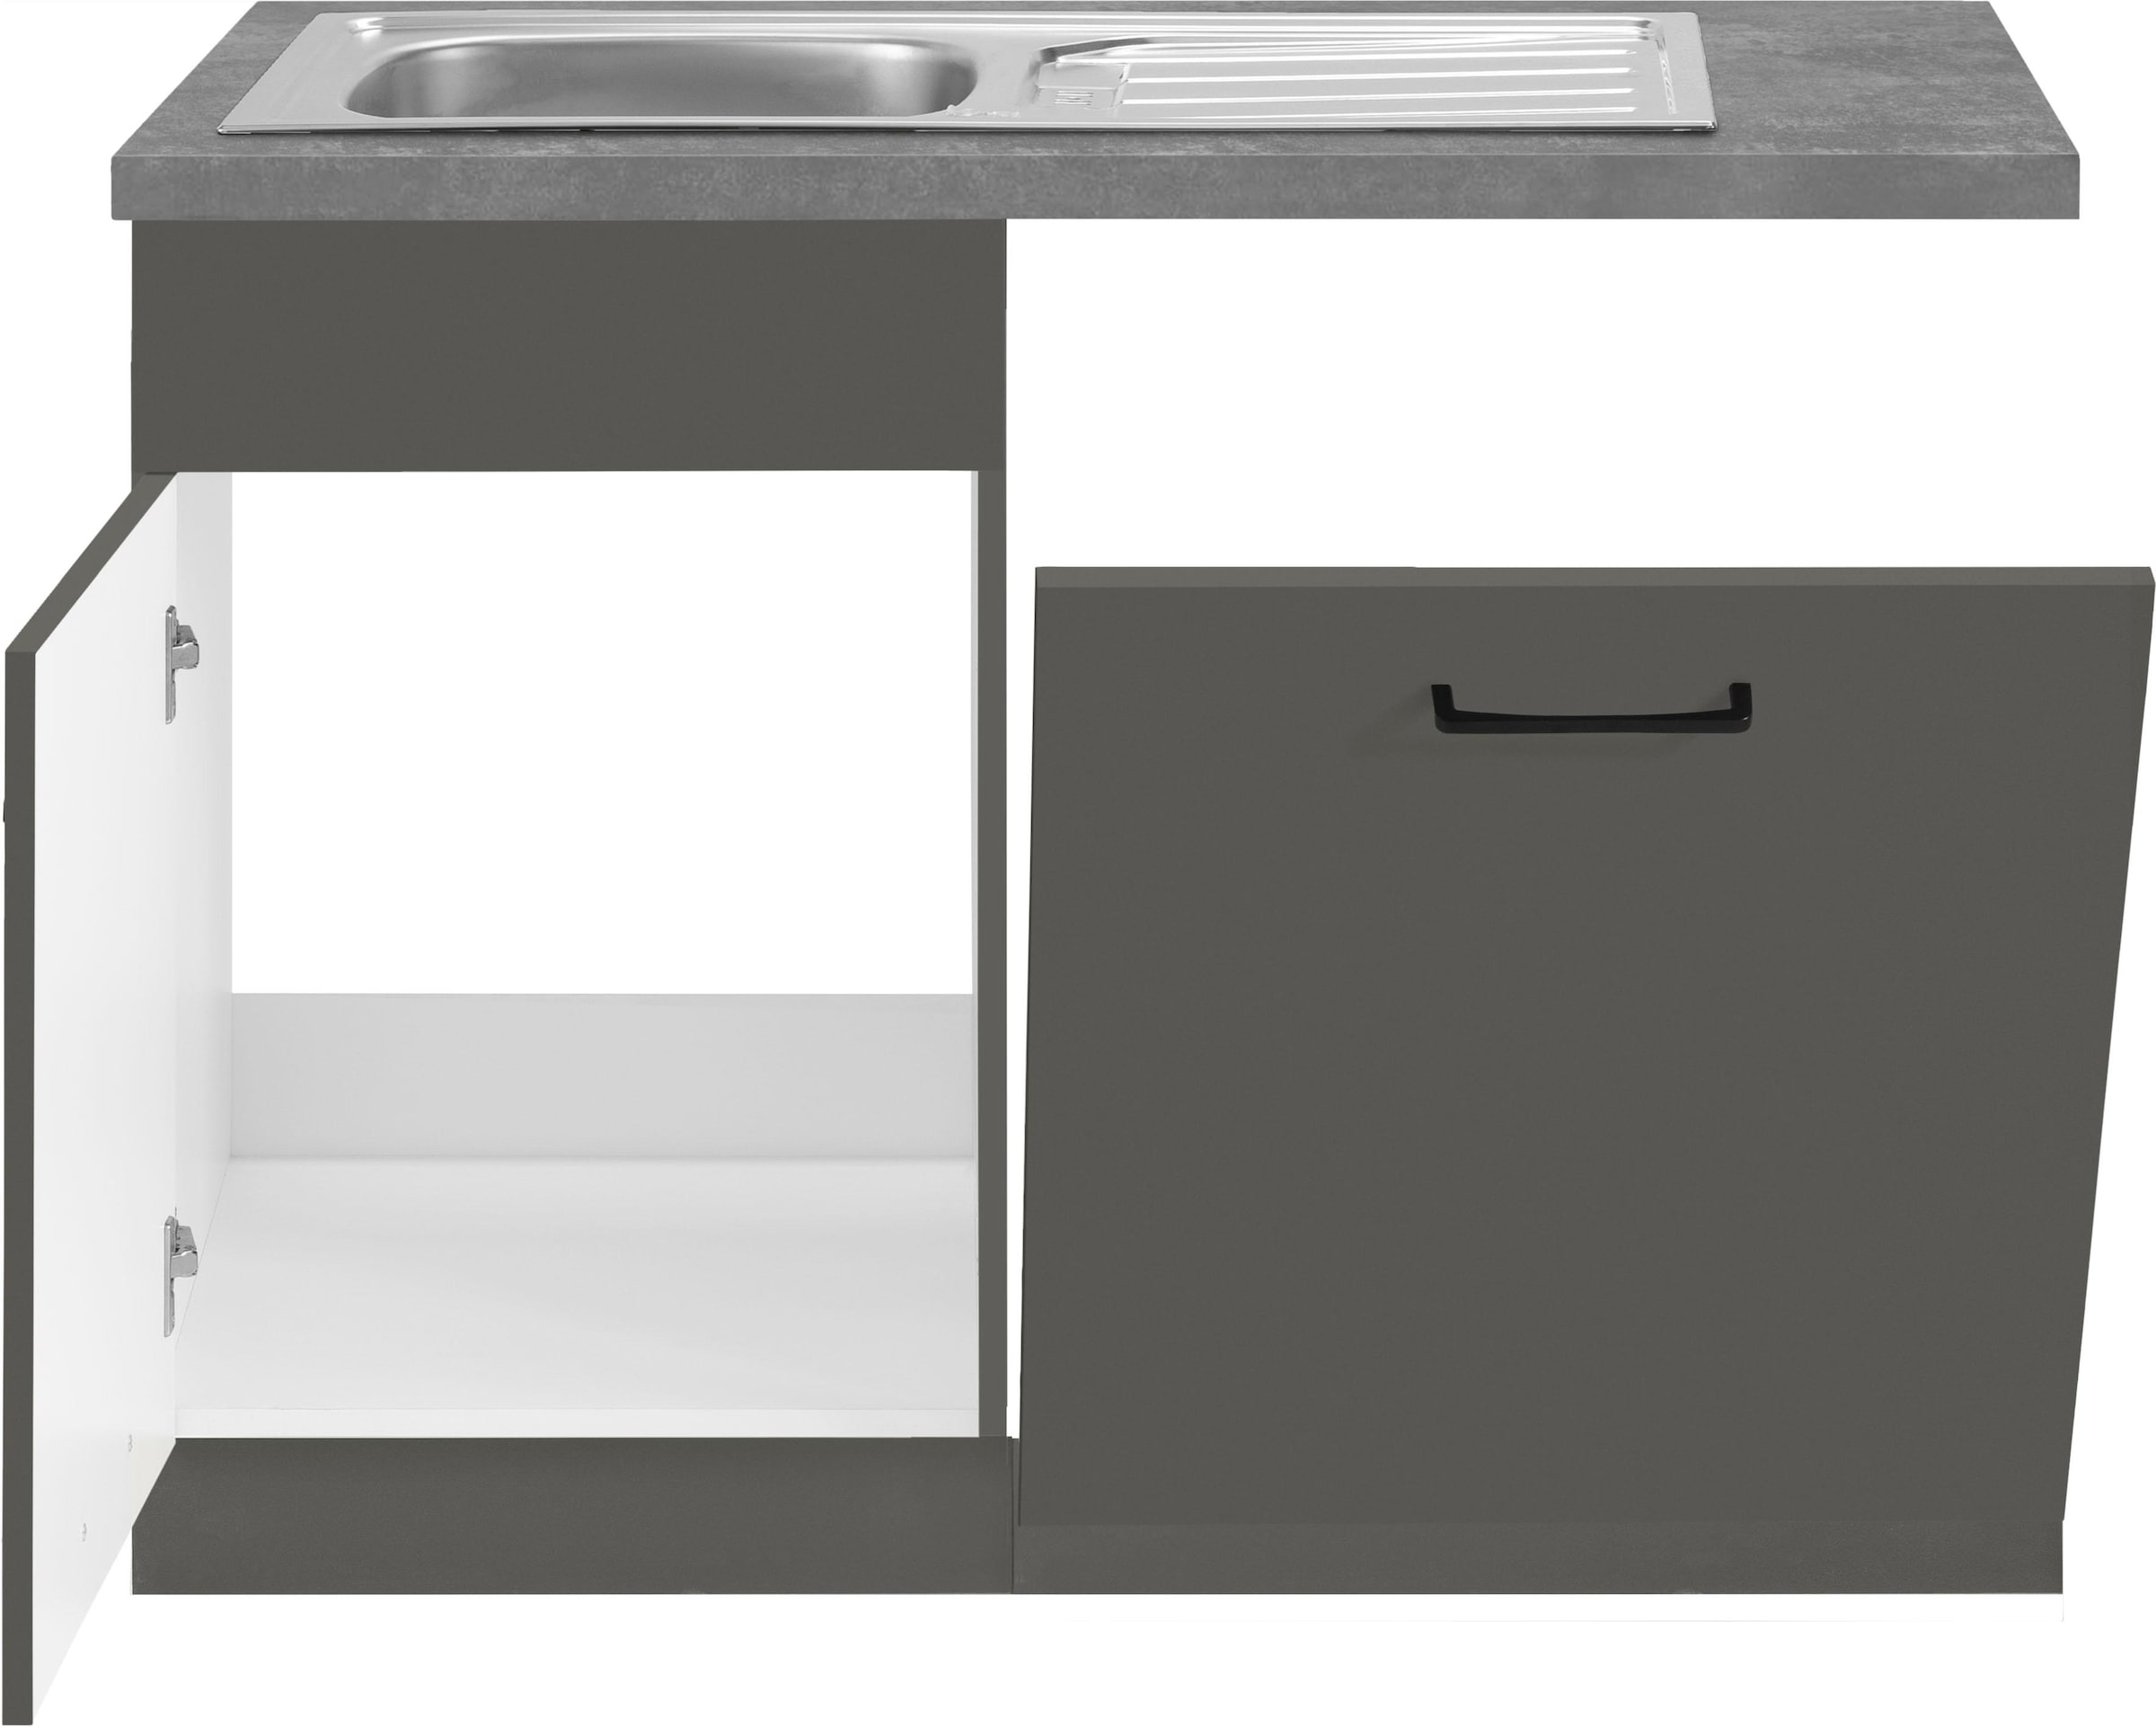 wiho Küchen Spülenschrank »Esbo«, 110 cm breit, inkl. Tür/Sockel für  Geschirrspüler auf Rechnung bestellen | Spülenschränke